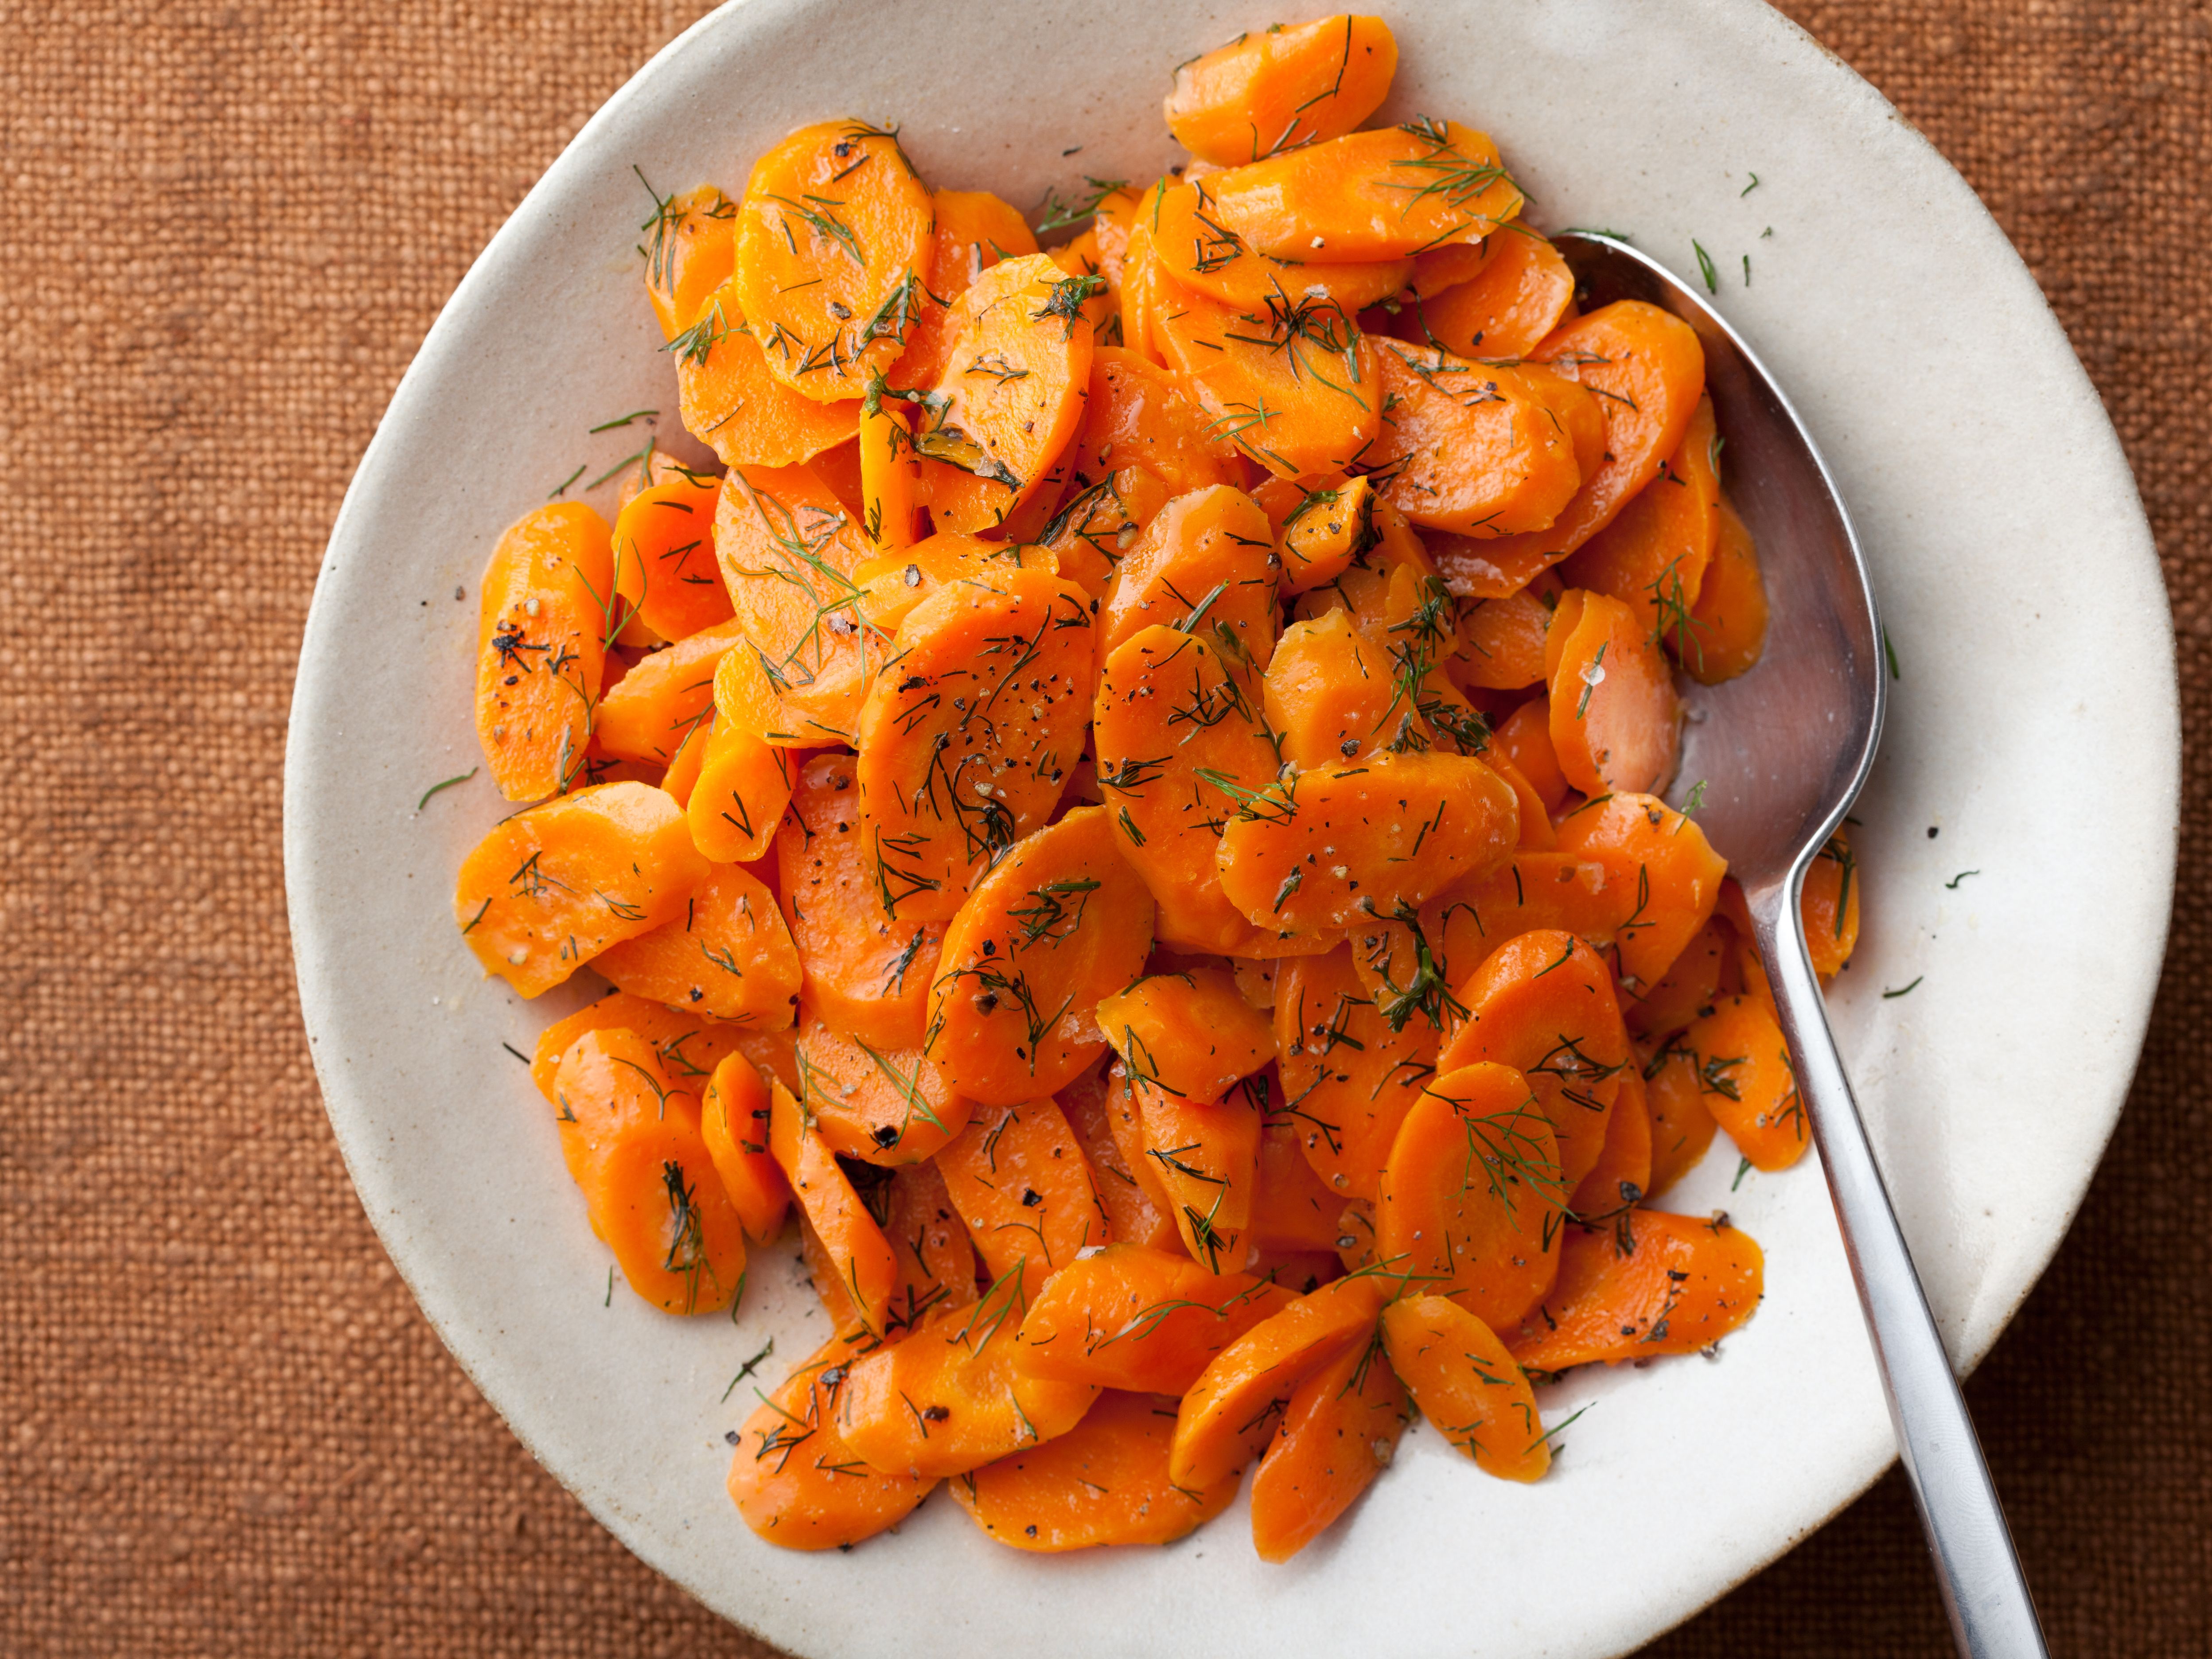 Морковь варёная - калорийность, полезные свойства, польза и вред, описание